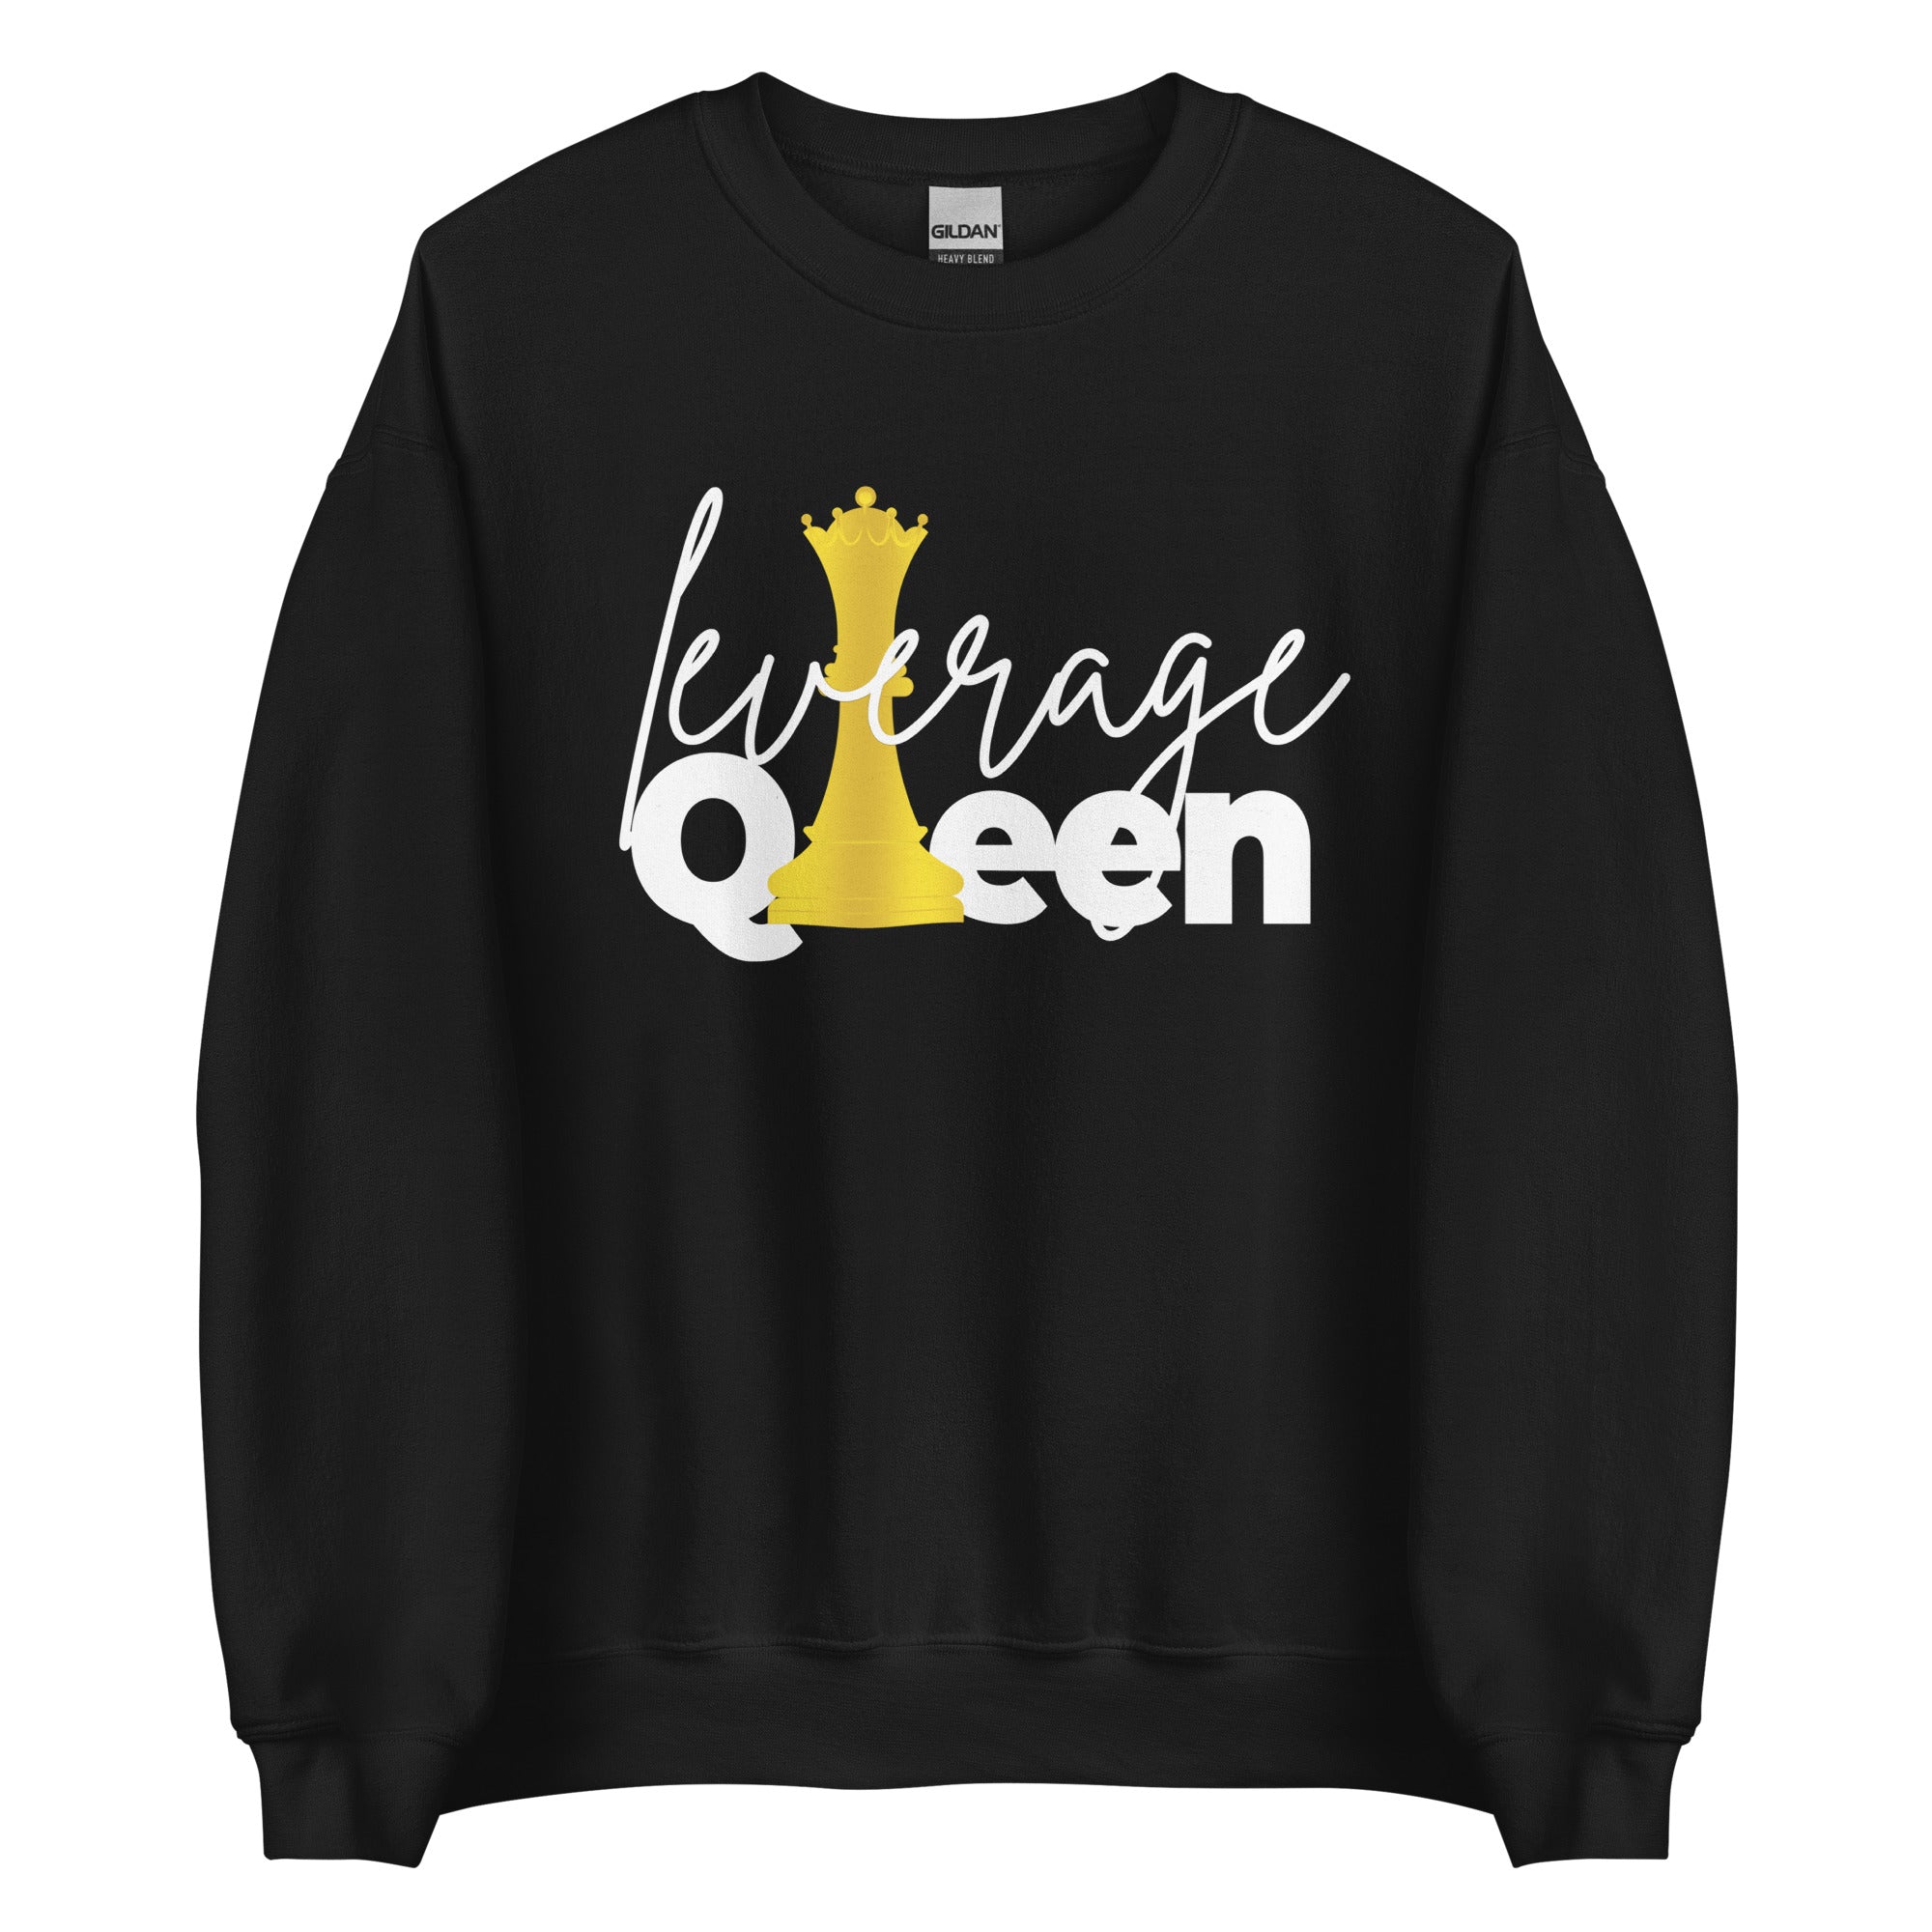 Leverage Queen Unisex Sweatshirt